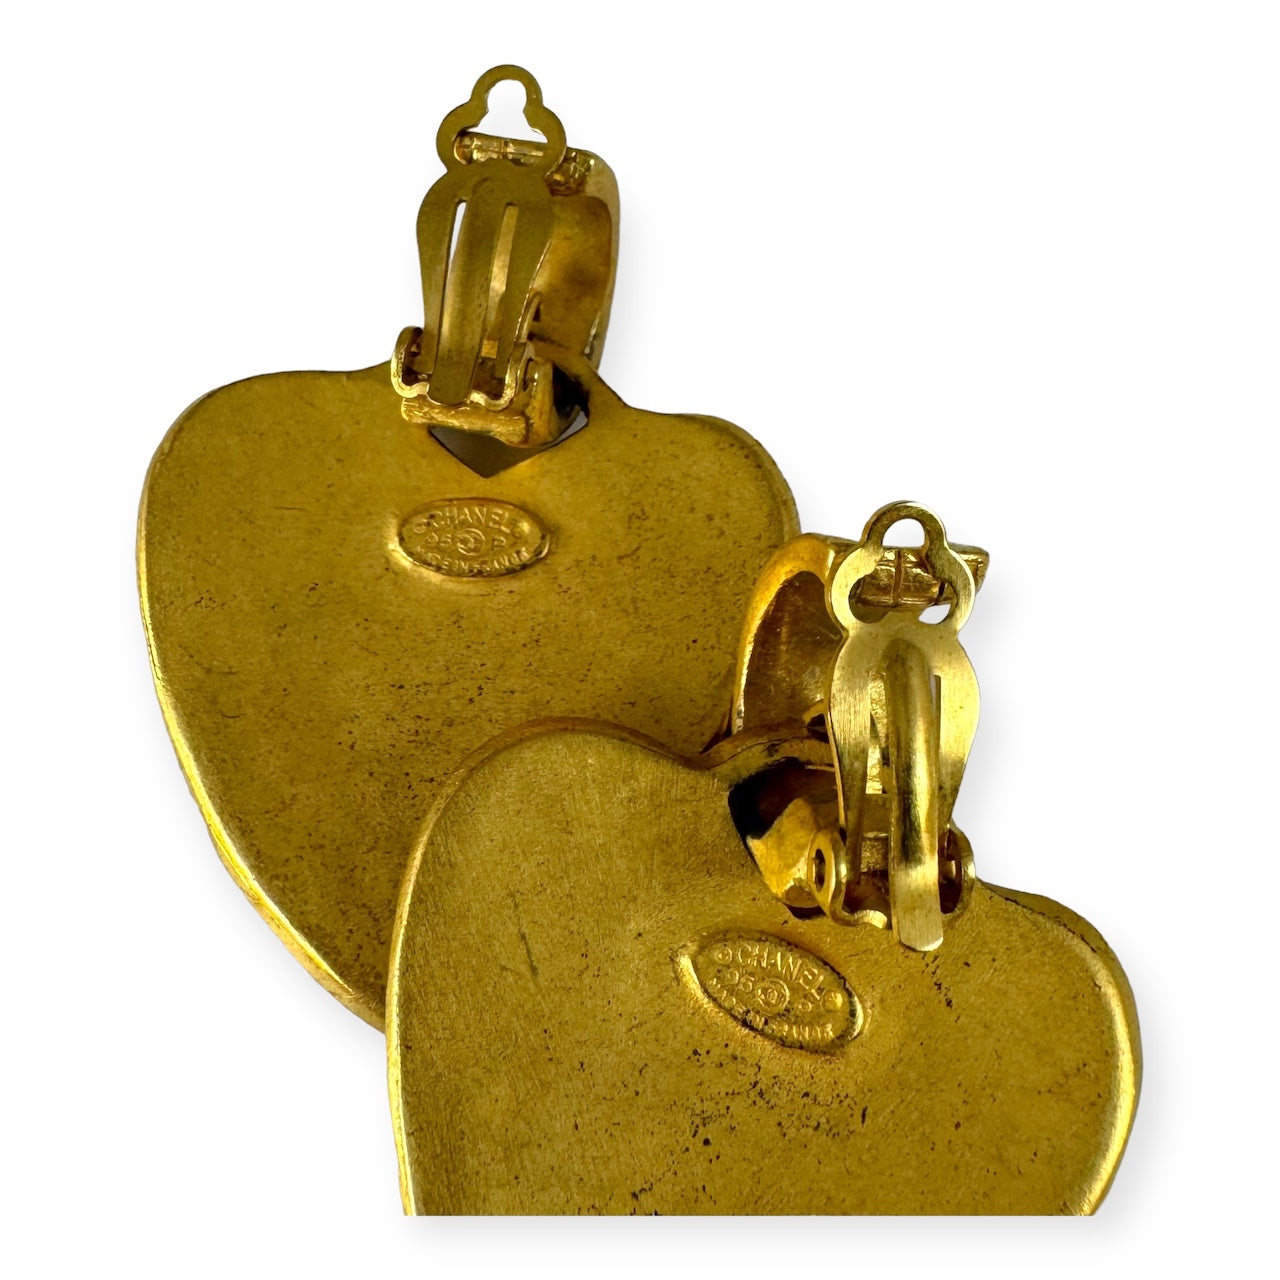 CHANEL Heart Drop Earrings in Gold